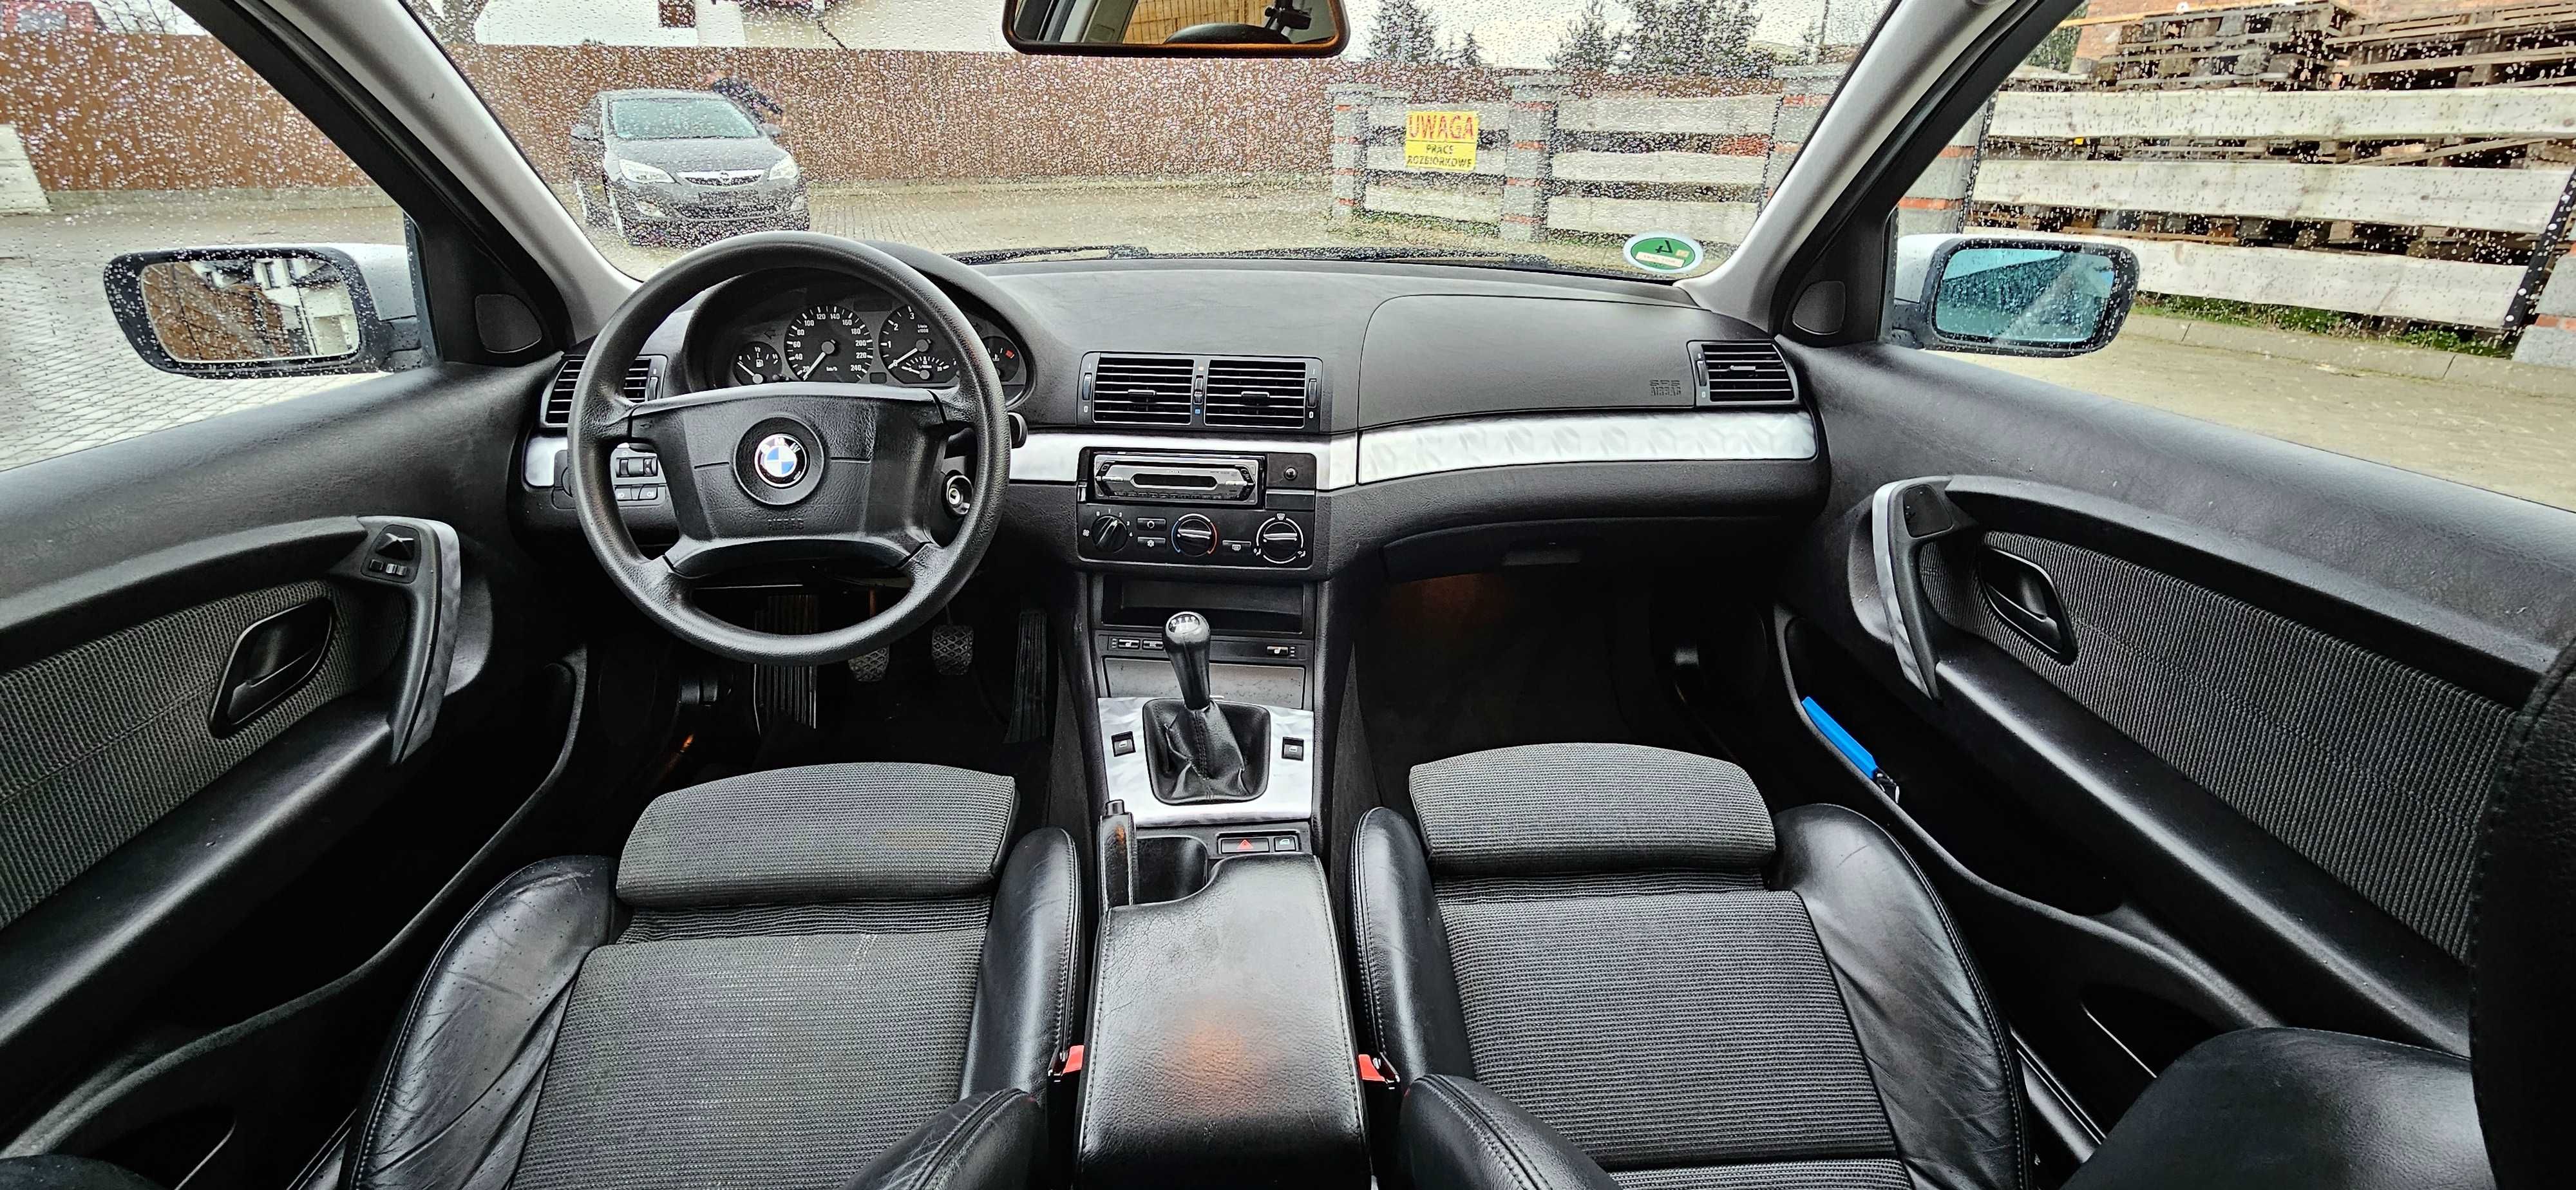 BMW E46 316i 2004r skóra klima SUPER STAN!!!